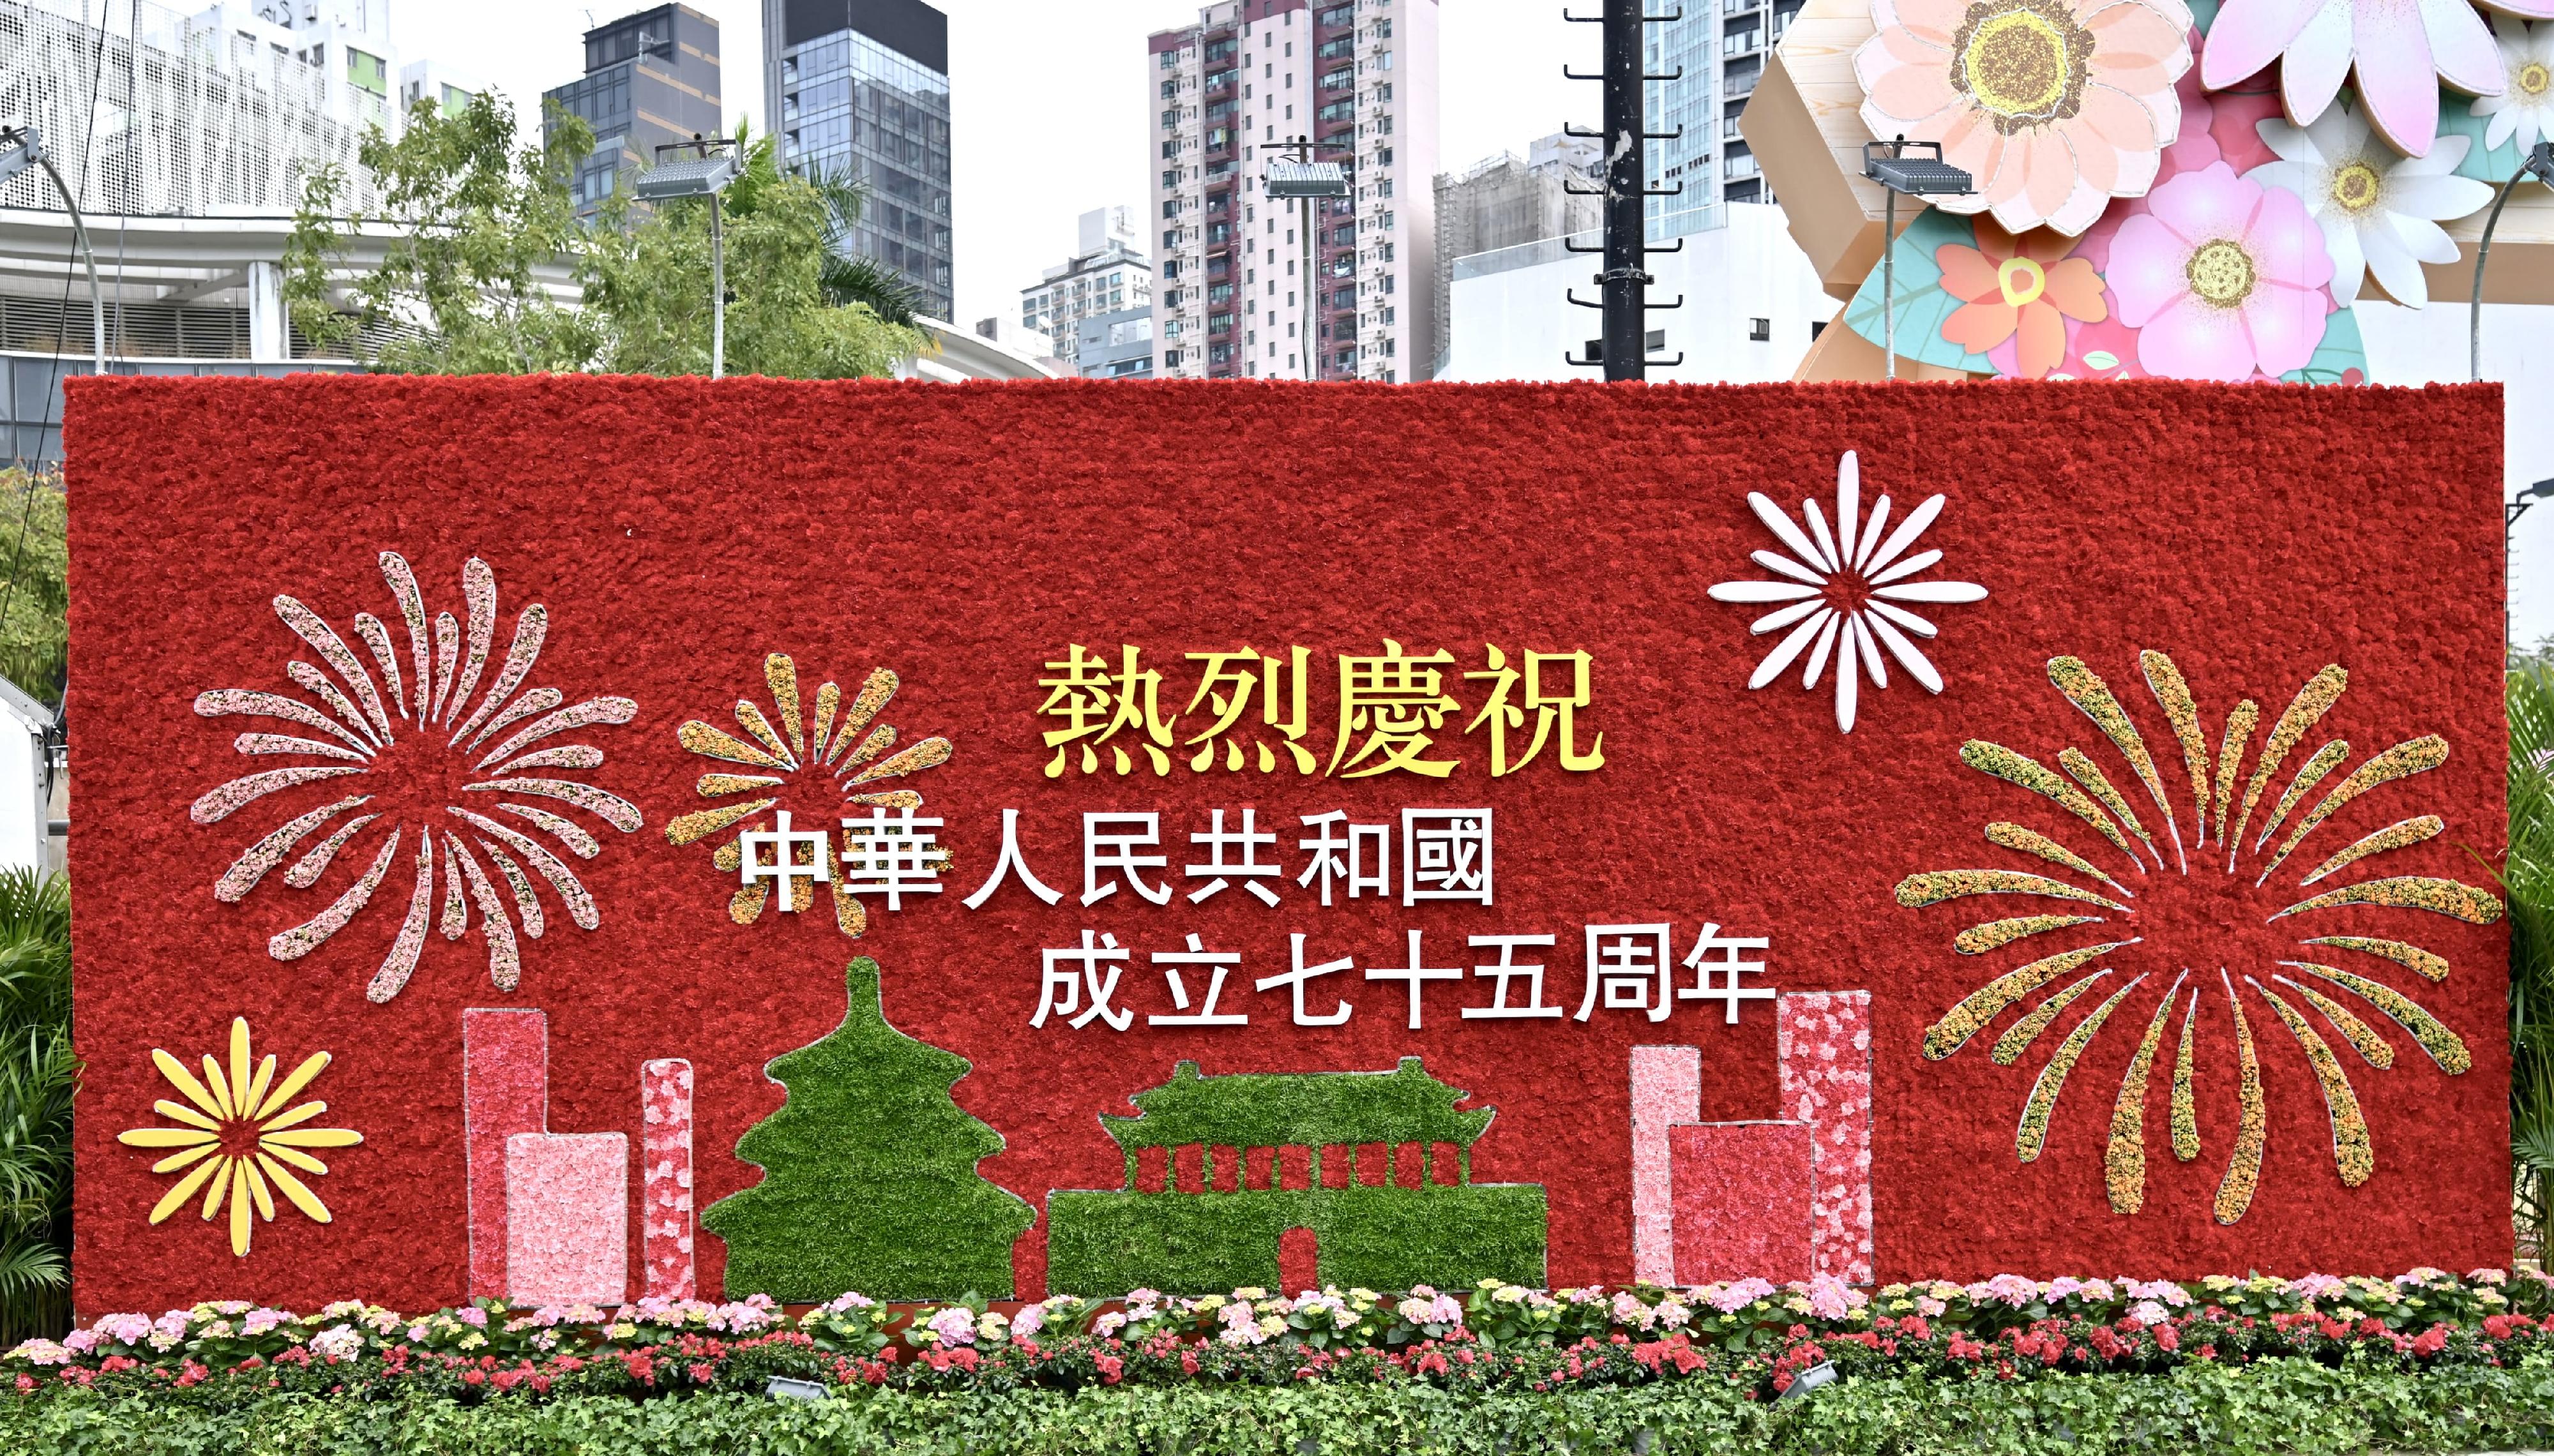 每年一度的赏花盛事香港花卉展览今日（三月十五日）在维多利亚公园开幕，展出约四十二万株花卉，包括约四万株主题花香彩雀。为庆祝中华人民共和国成立七十五周年，花展的兴发街入口设置康乃馨主题花墙，以志其盛。